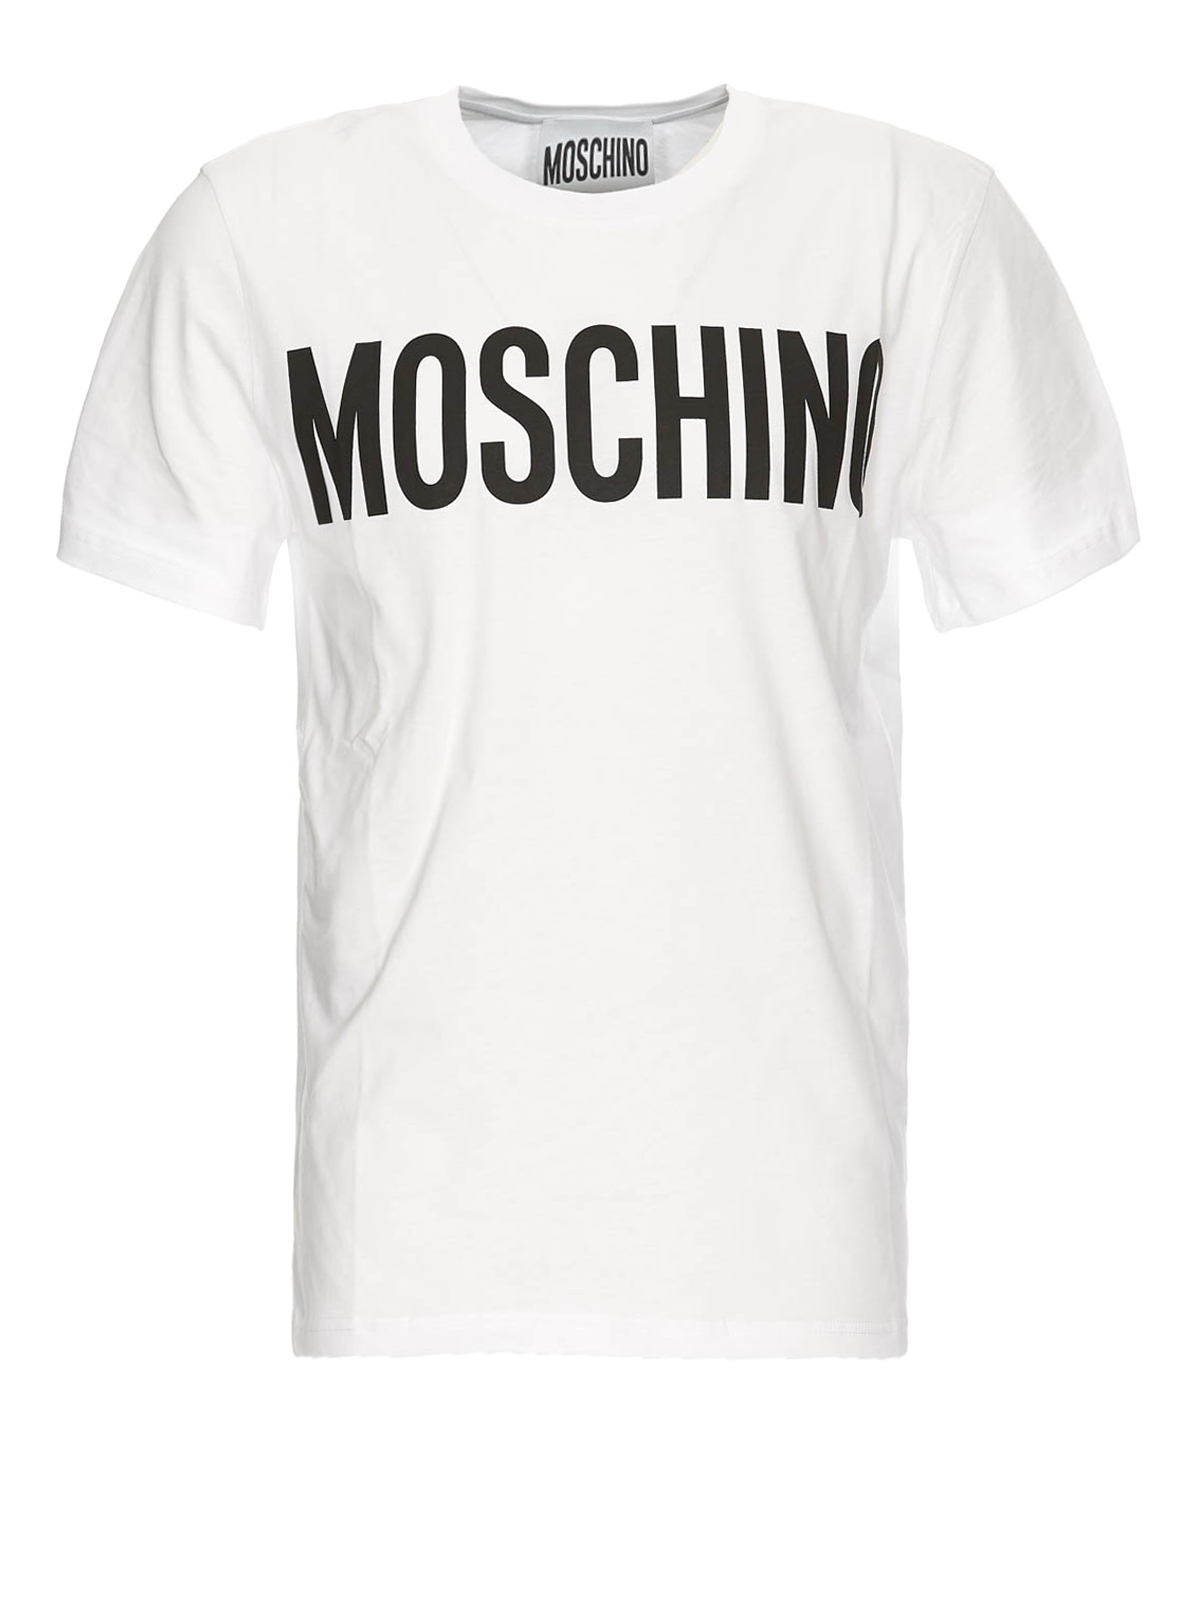 Moschino Print White T-shirt